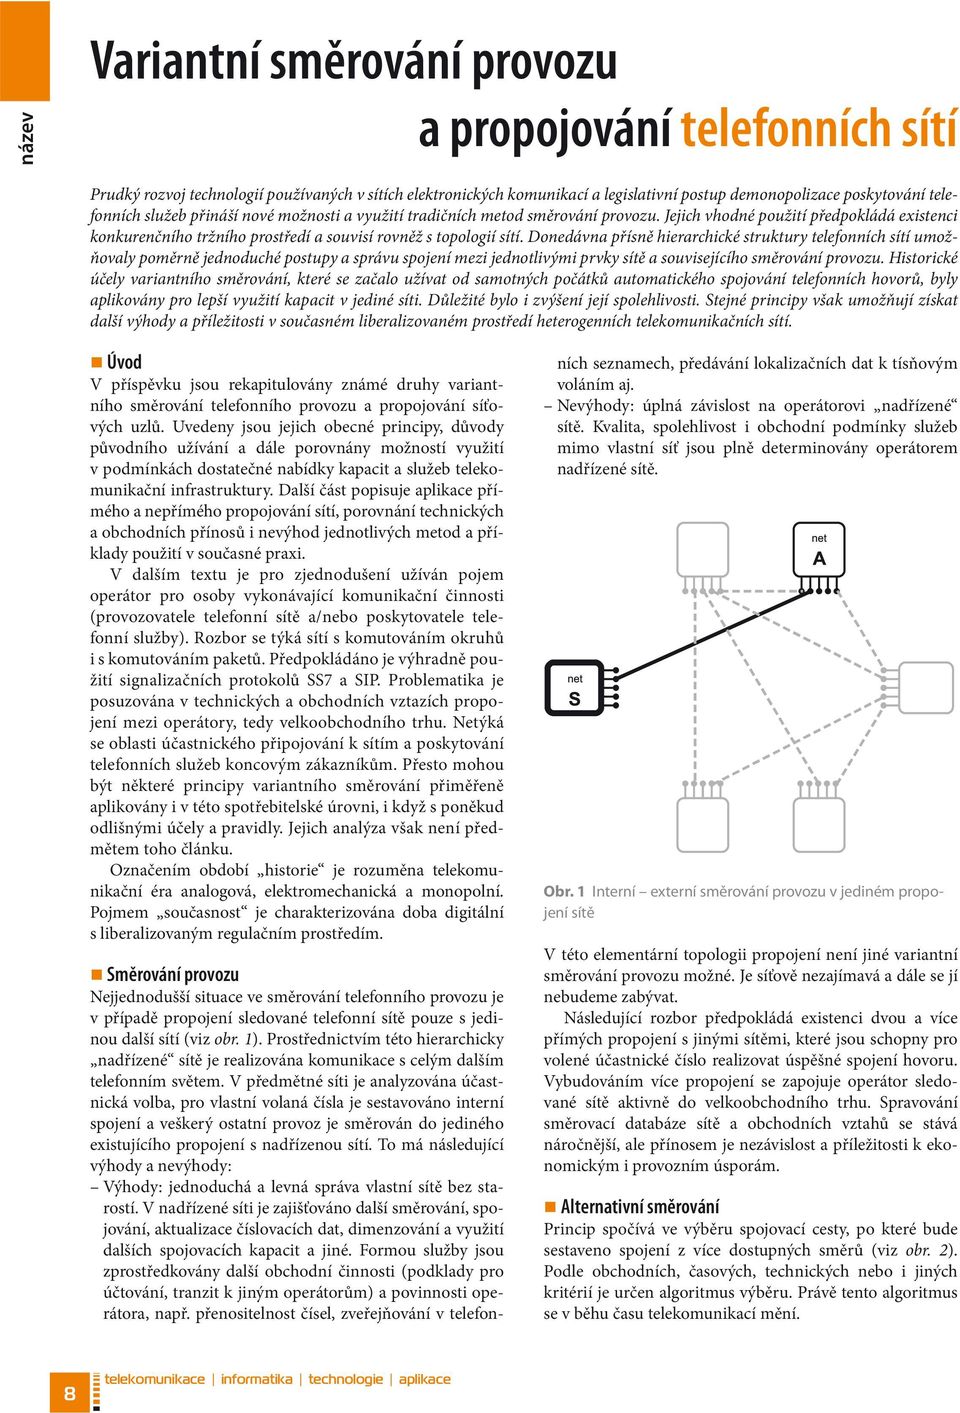 Donedávna přísně hierarchické struktury telefonních sítí umožňovaly poměrně jednoduché postupy a správu spojení mezi jednotlivými prvky sítě a souvisejícího směrování provozu.